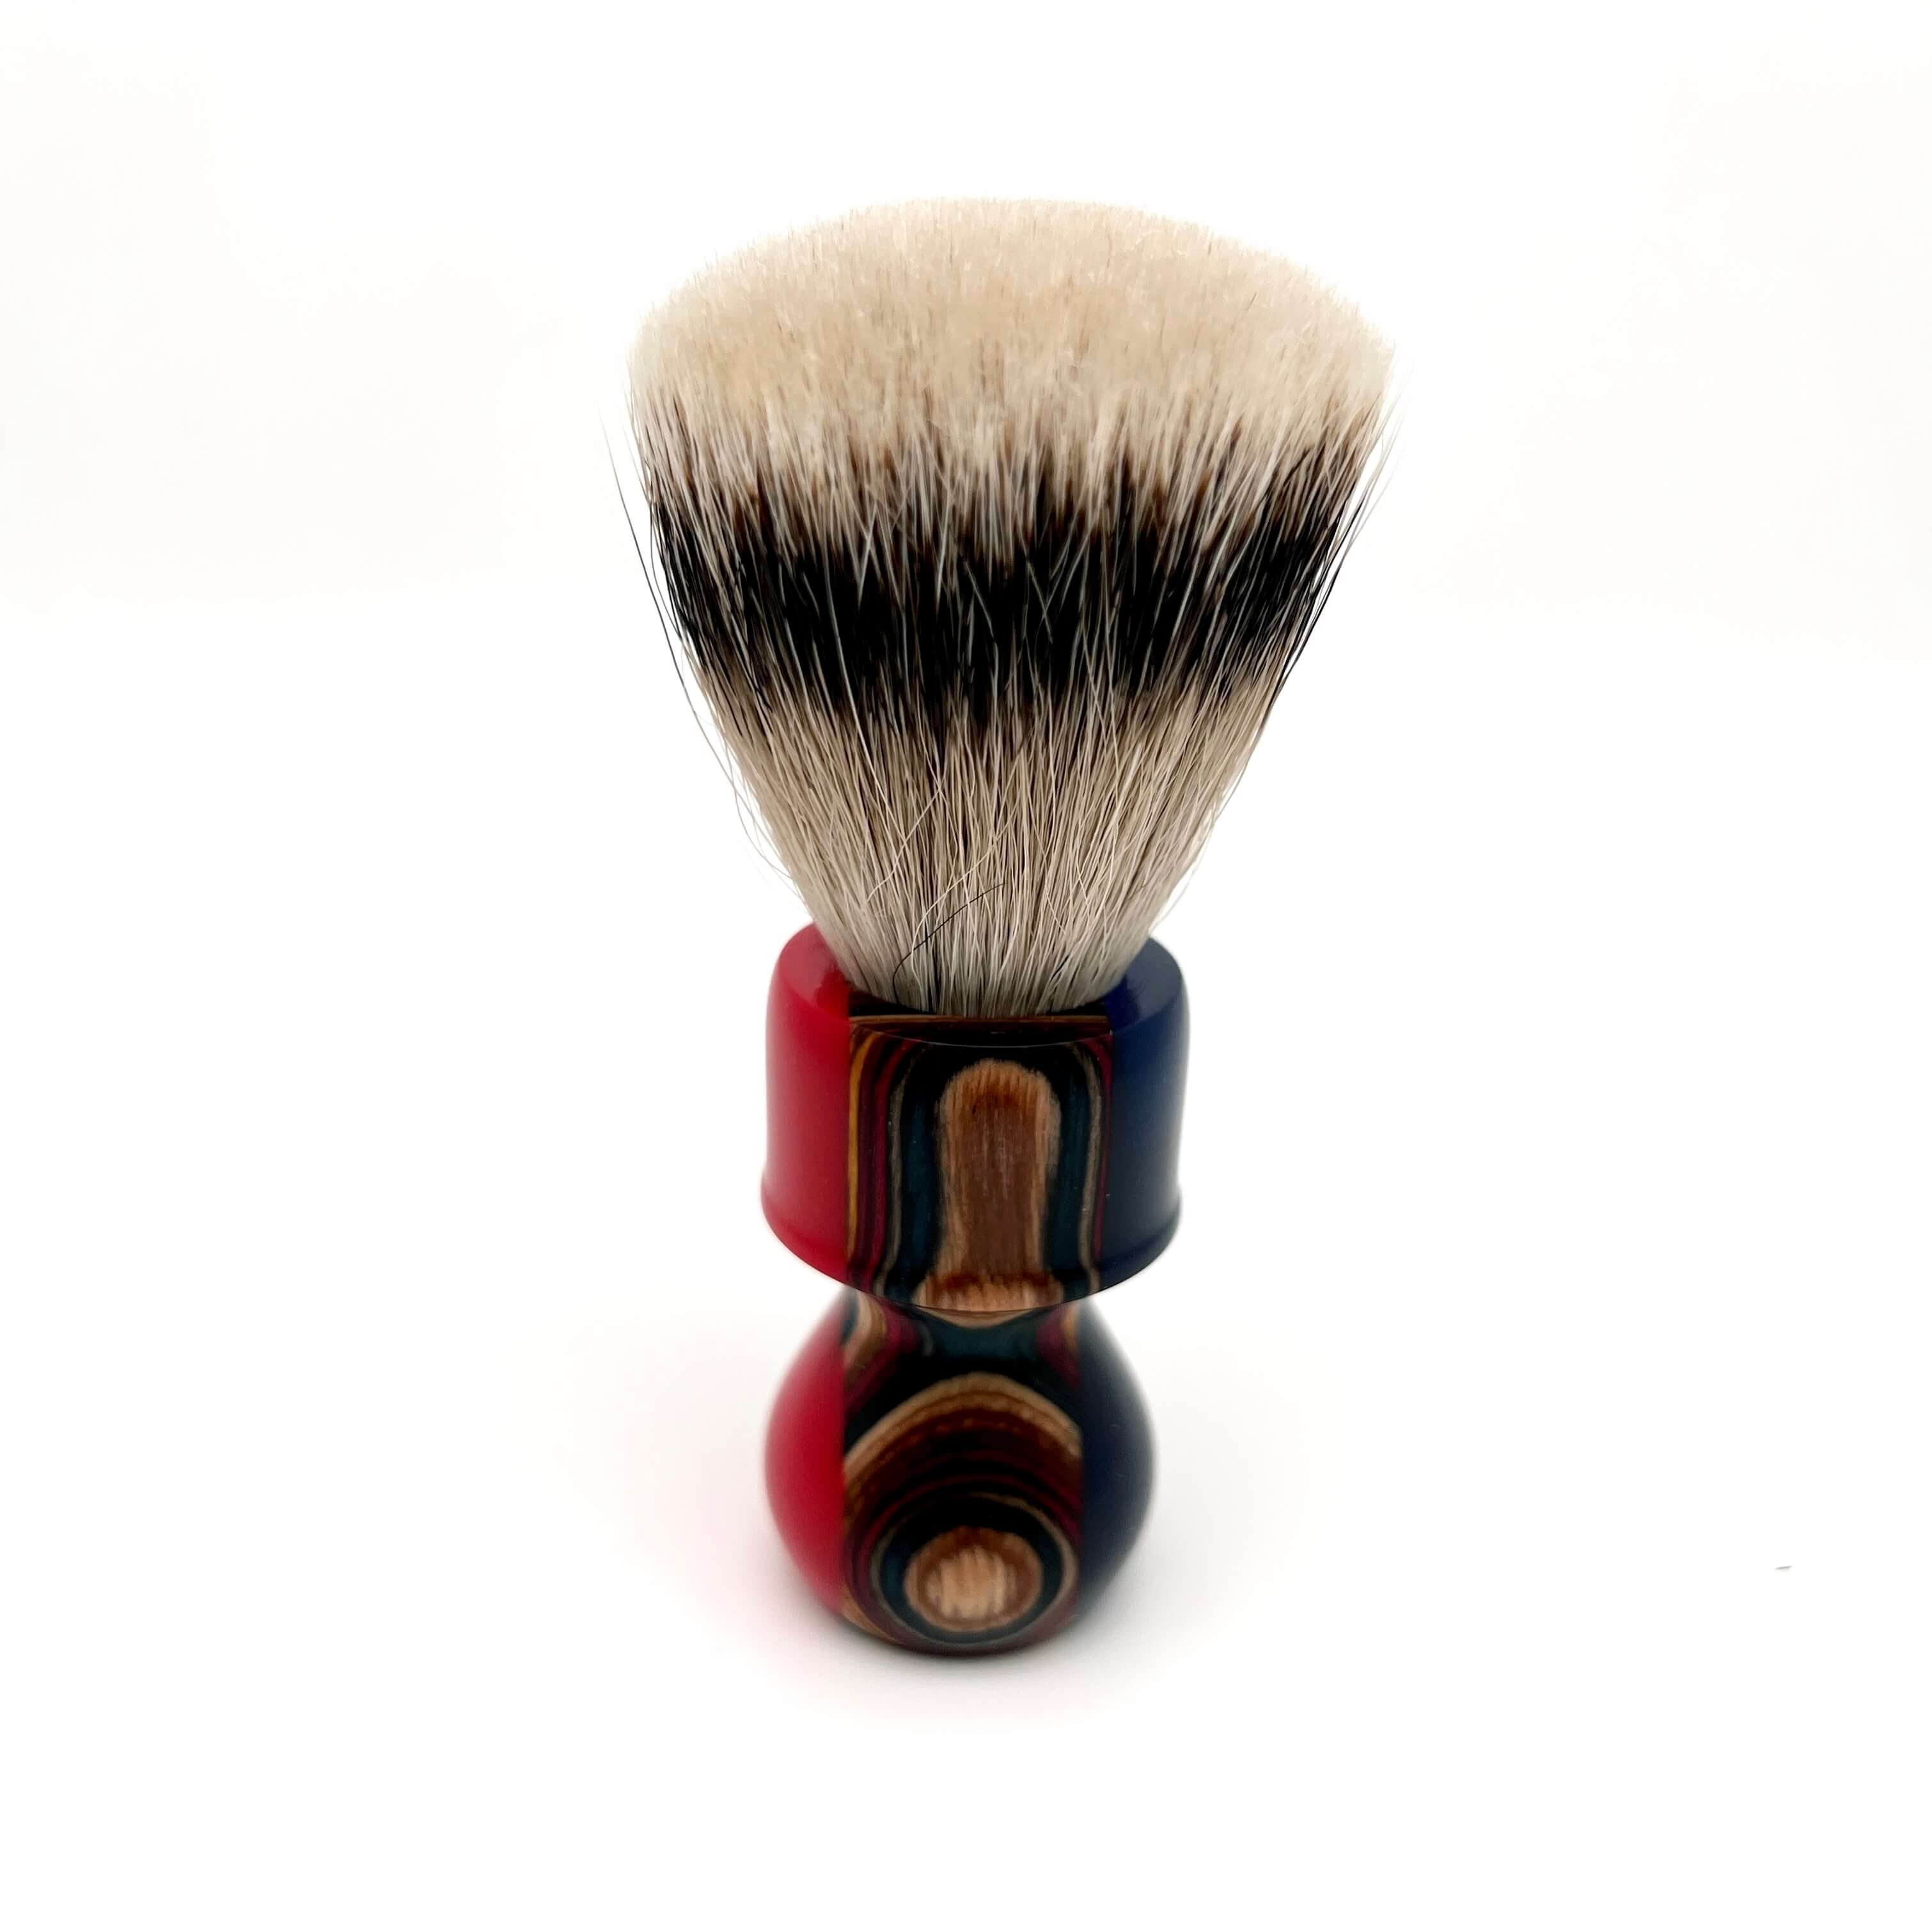 SHD Finest 3 Band Badger con mango de madera, brocha de afeitar entera, herramienta de aseo para hombres